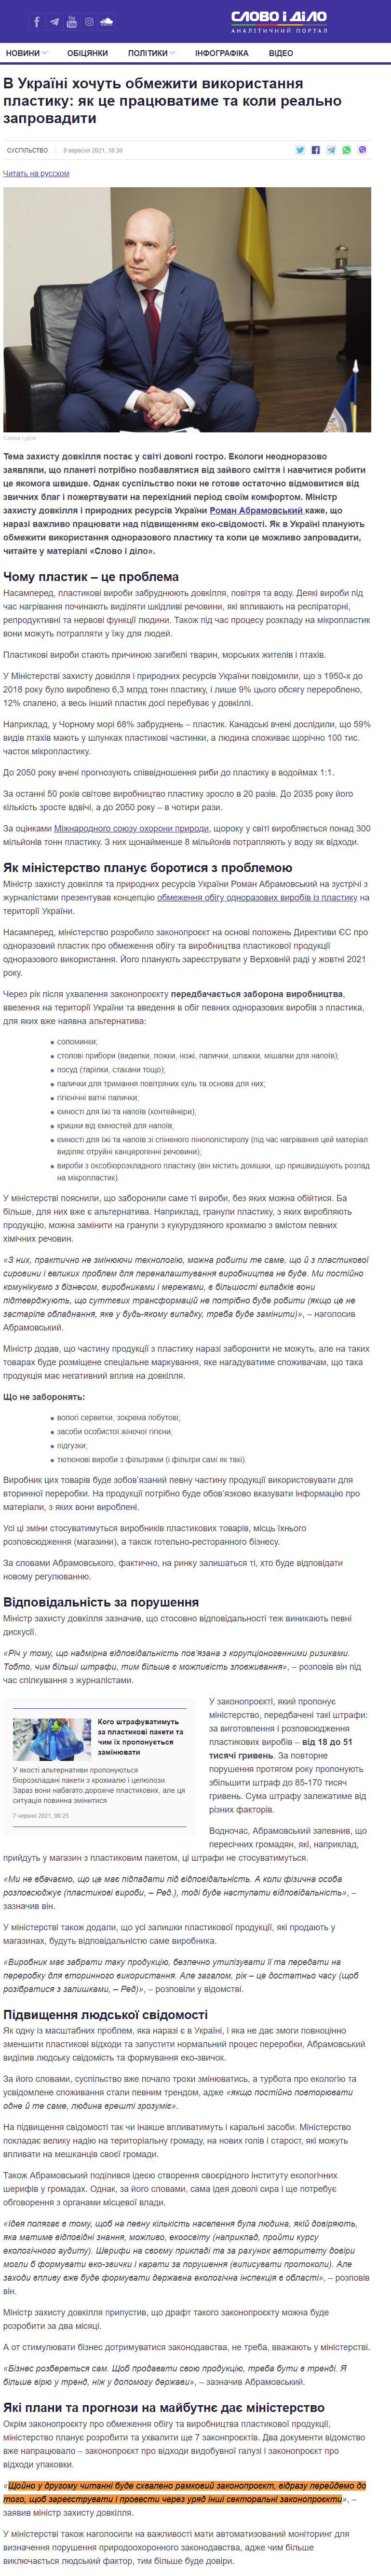 https://www.slovoidilo.ua/2021/09/09/stattja/suspilstvo/ukrayini-xochut-obmezhyty-vykorystannya-plastyku-yak-ce-pracyuvatyme-ta-koly-realno-zaprovadyty